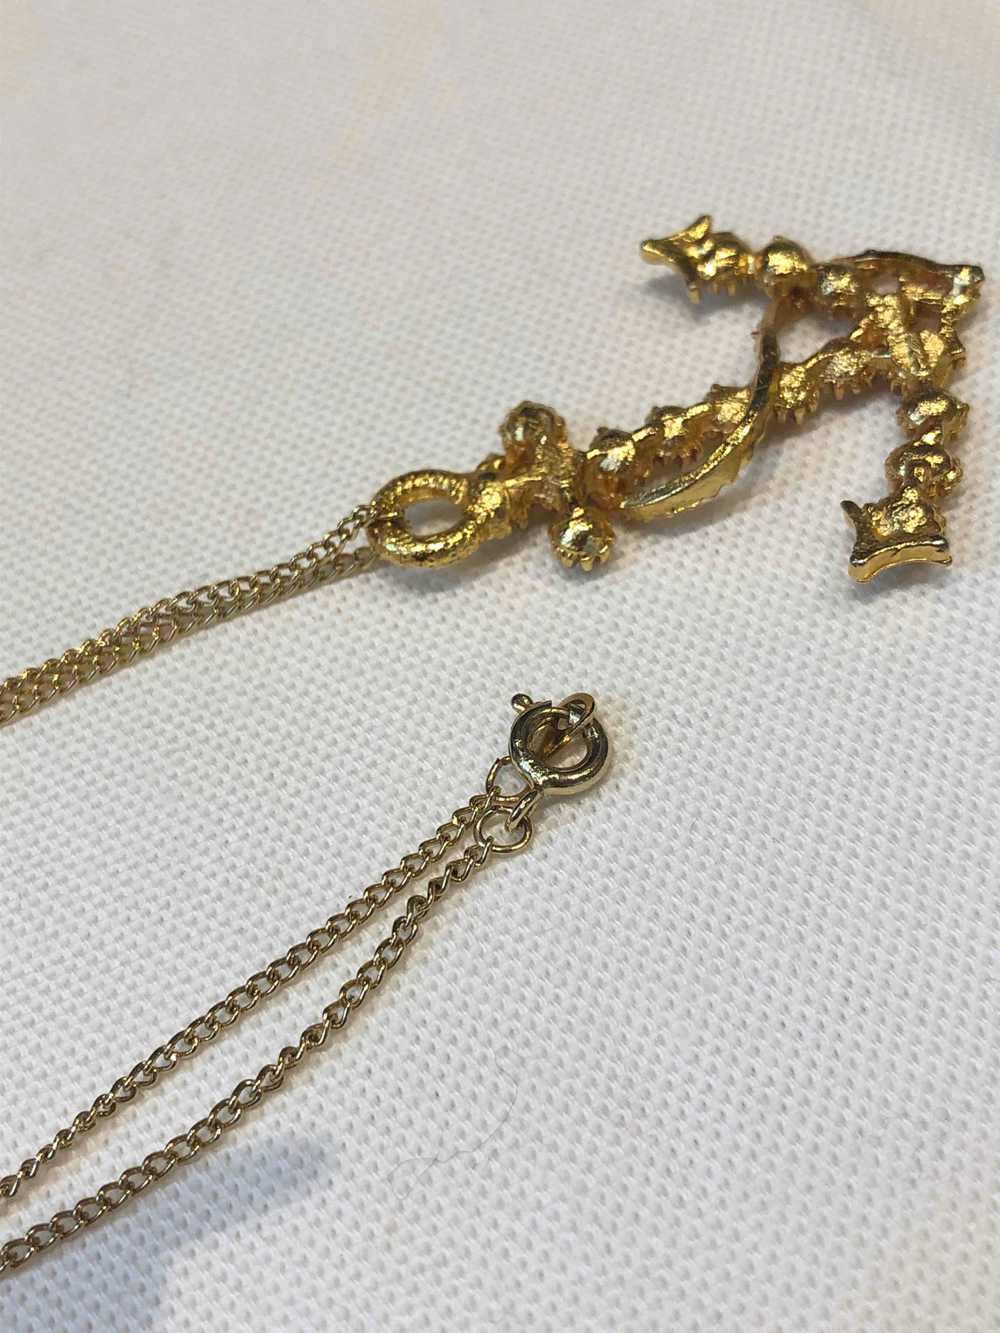 Golden metal necklace - Golden metal necklace wit… - image 4